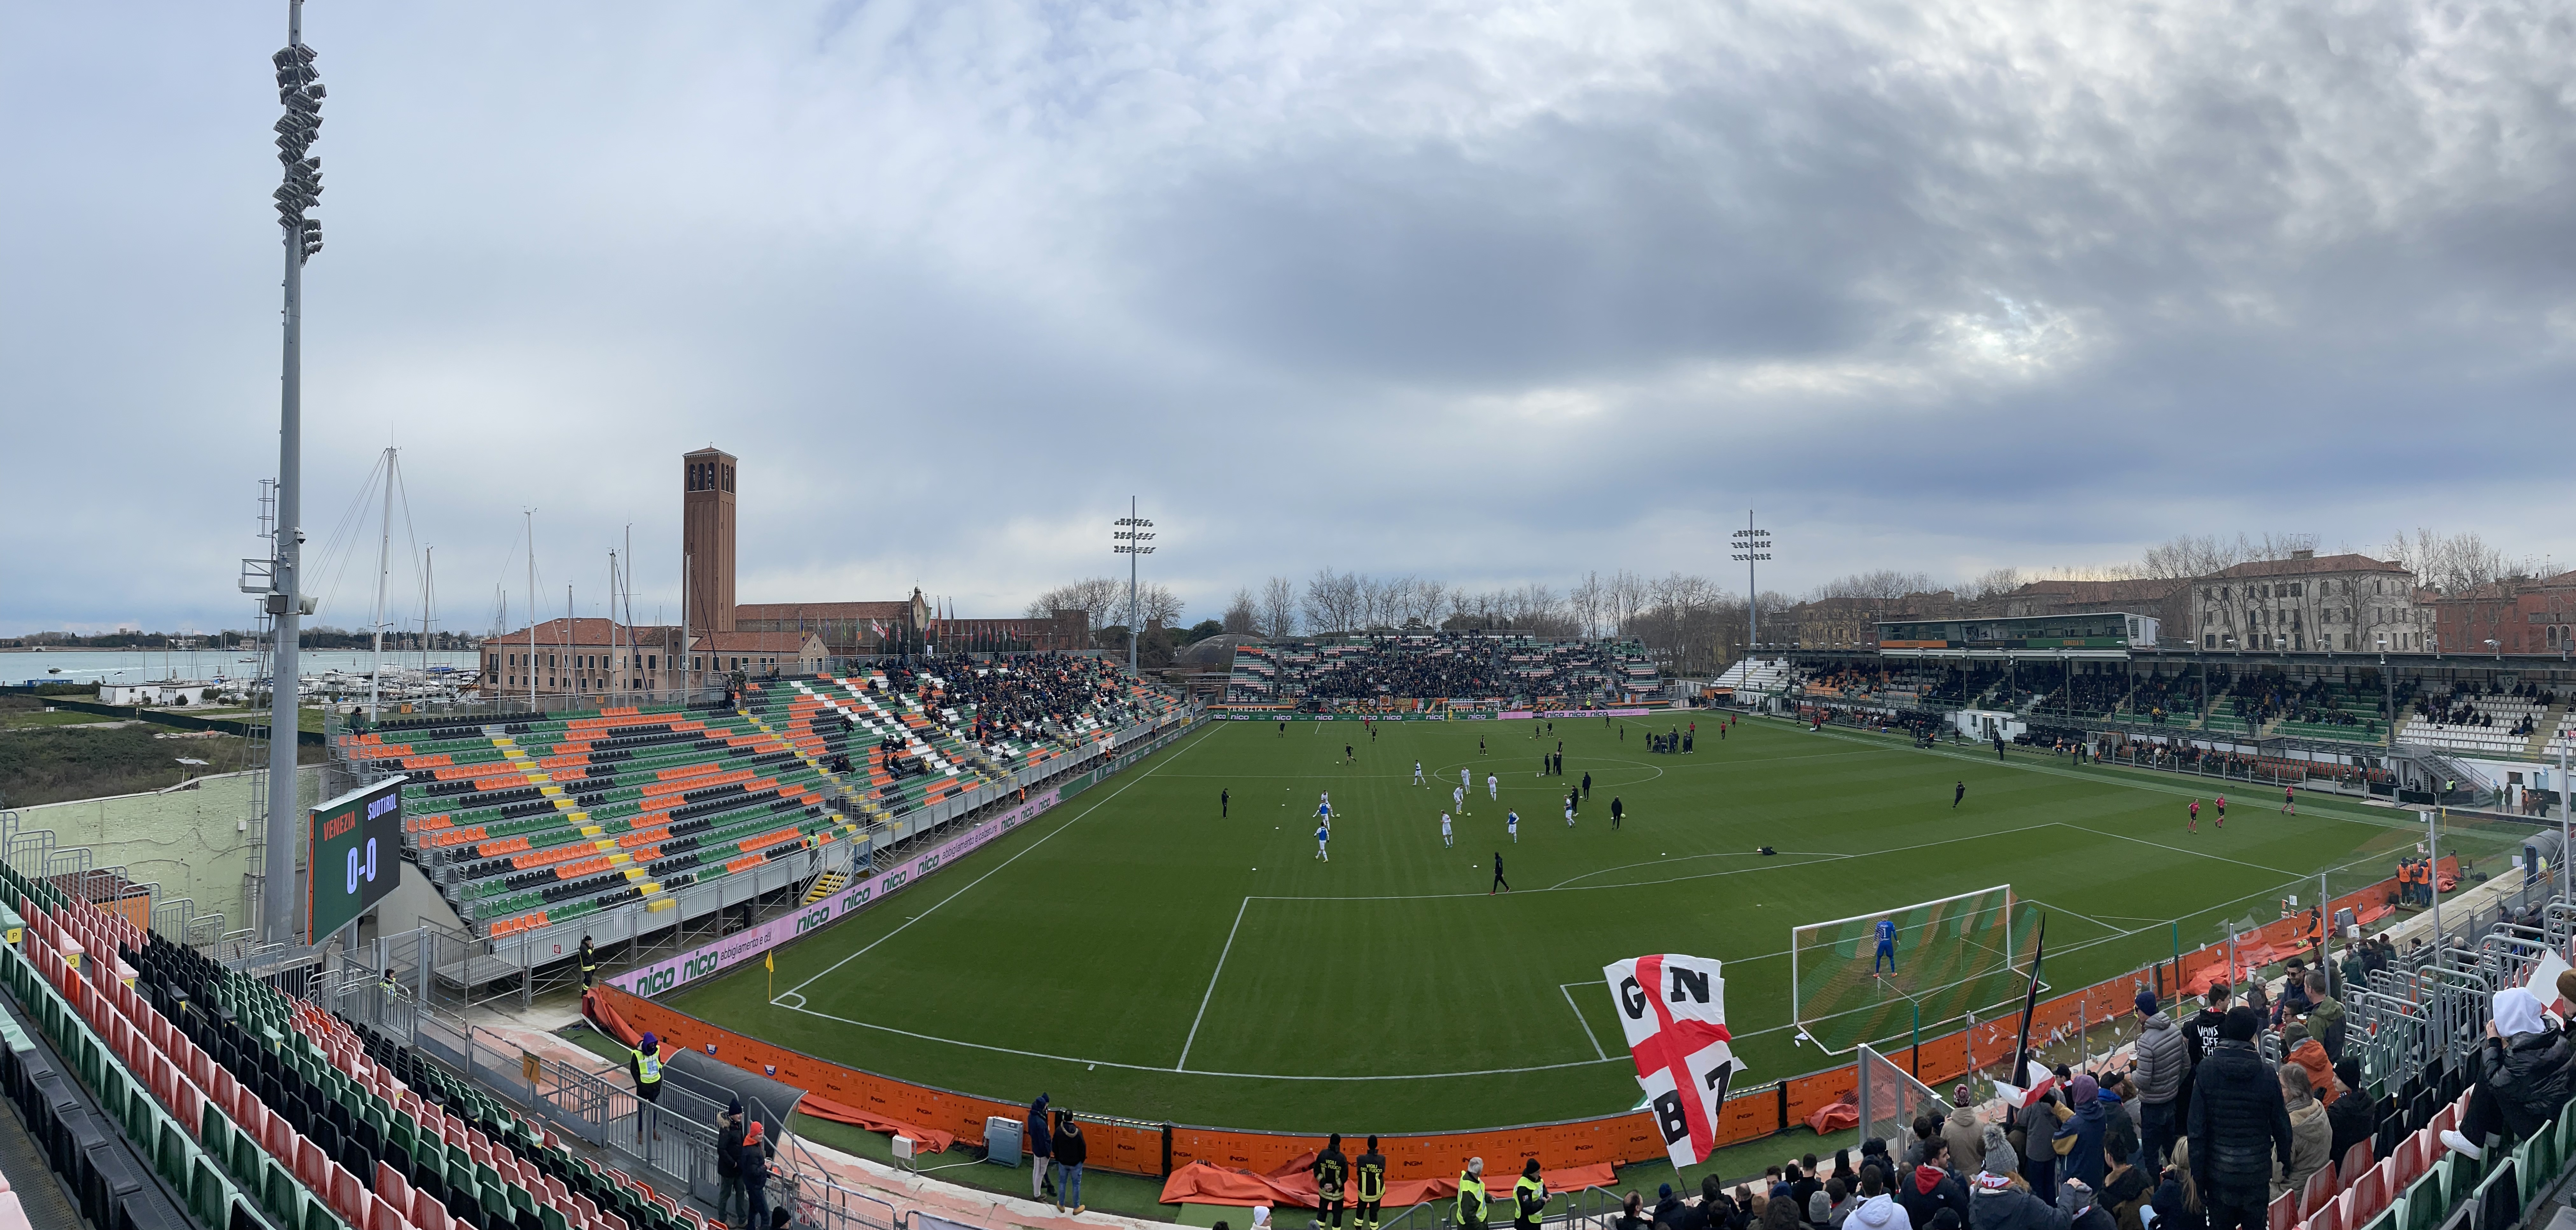 Venezia-Modena: biglietti e info - Modena FC